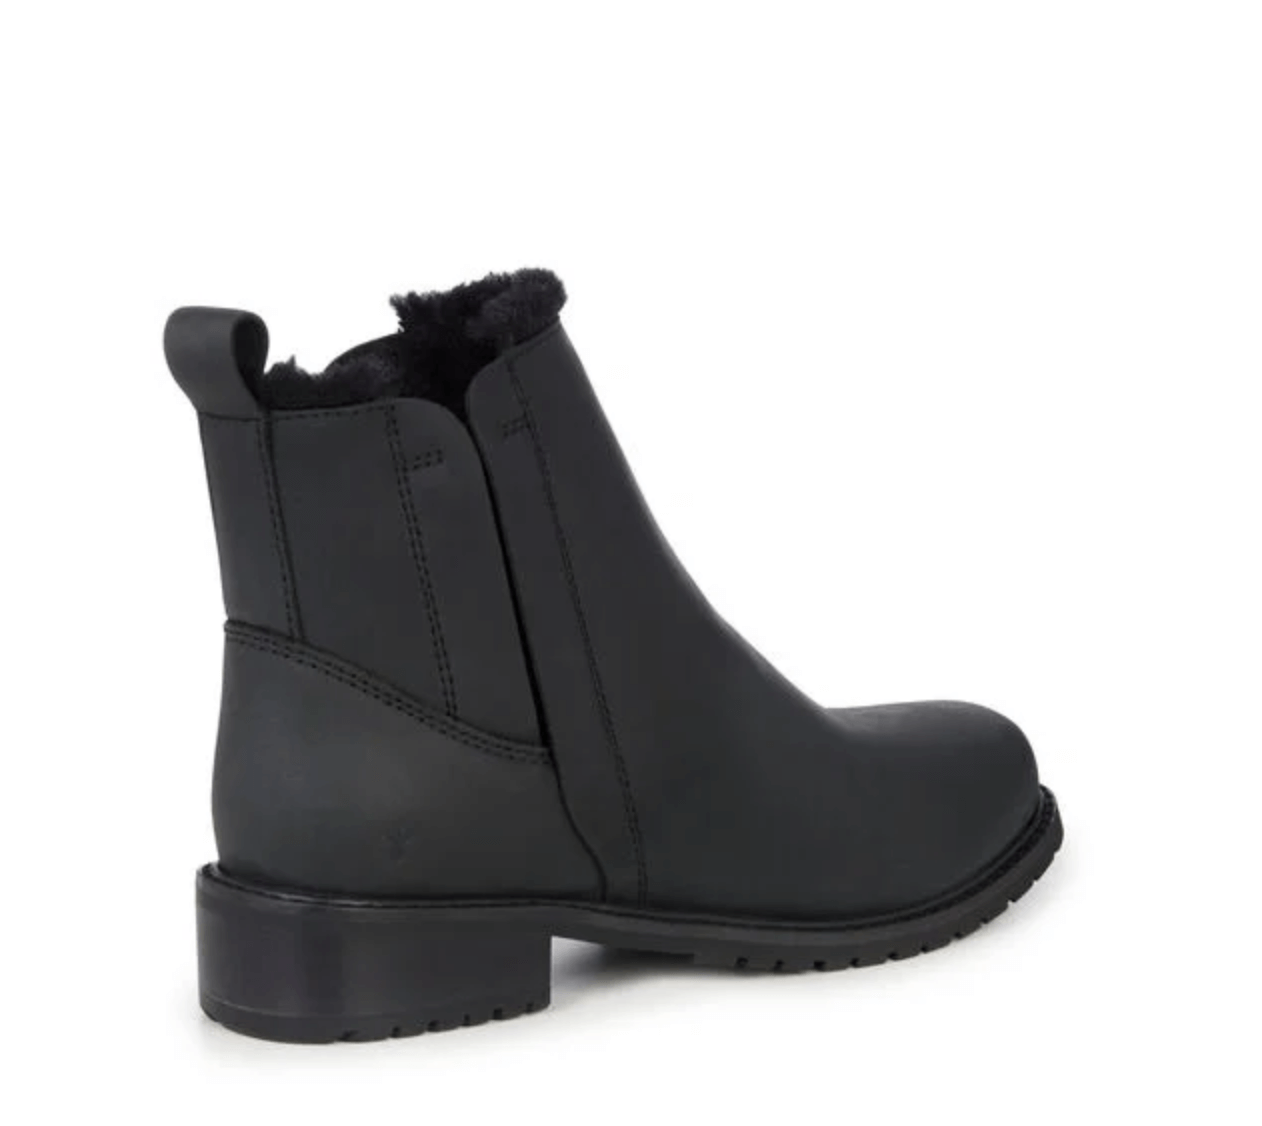 EMU Australia - Pioneer Leather Black Boots